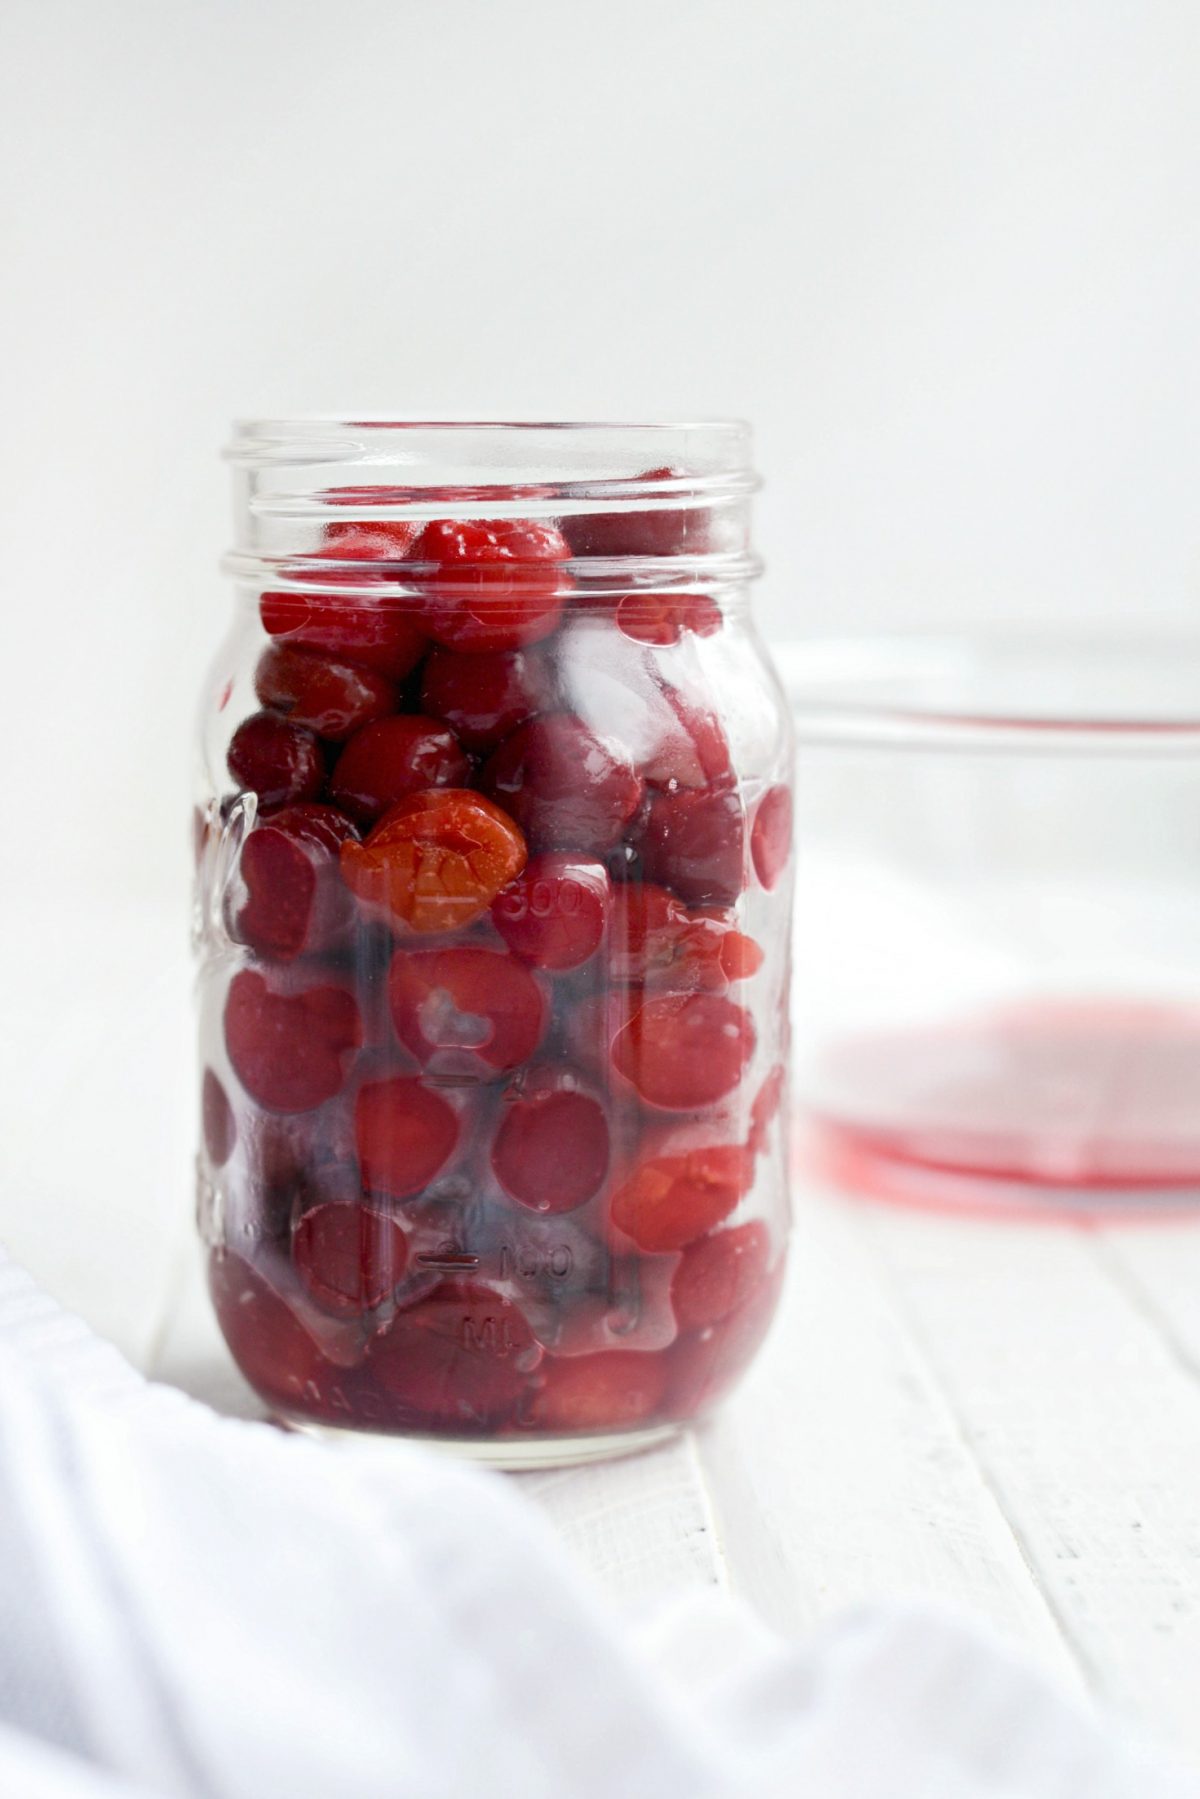 cherries in jars